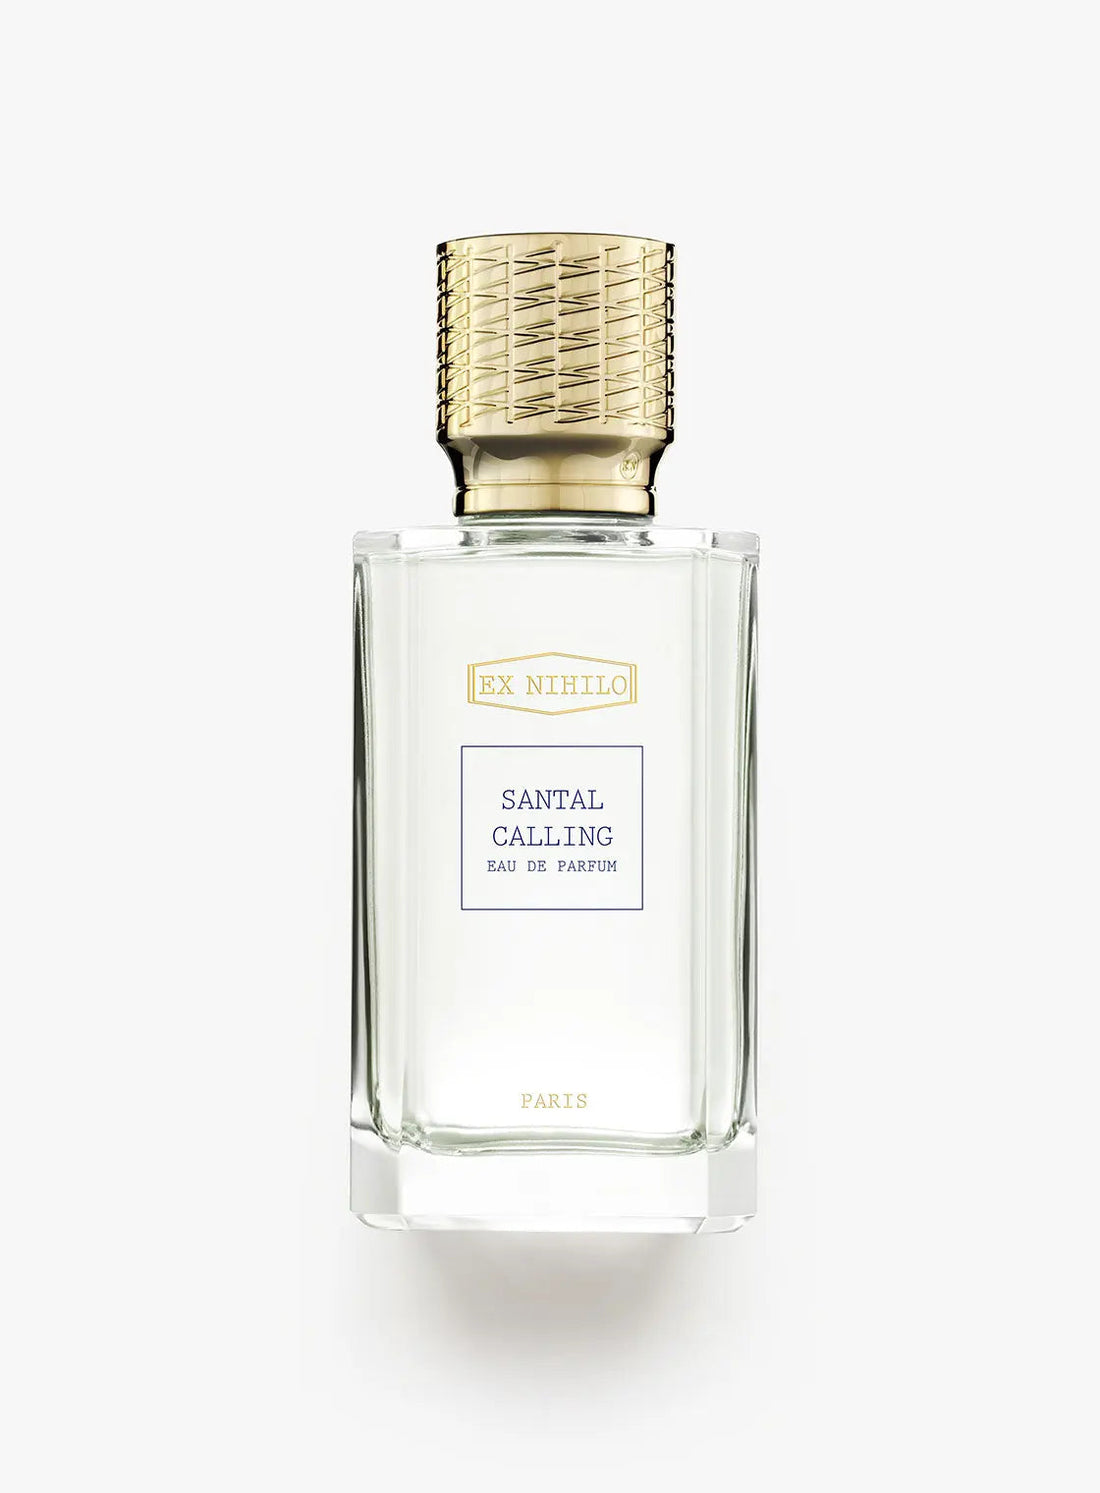 Ex nihilo Santal Calling eau de parfum - 100 ml